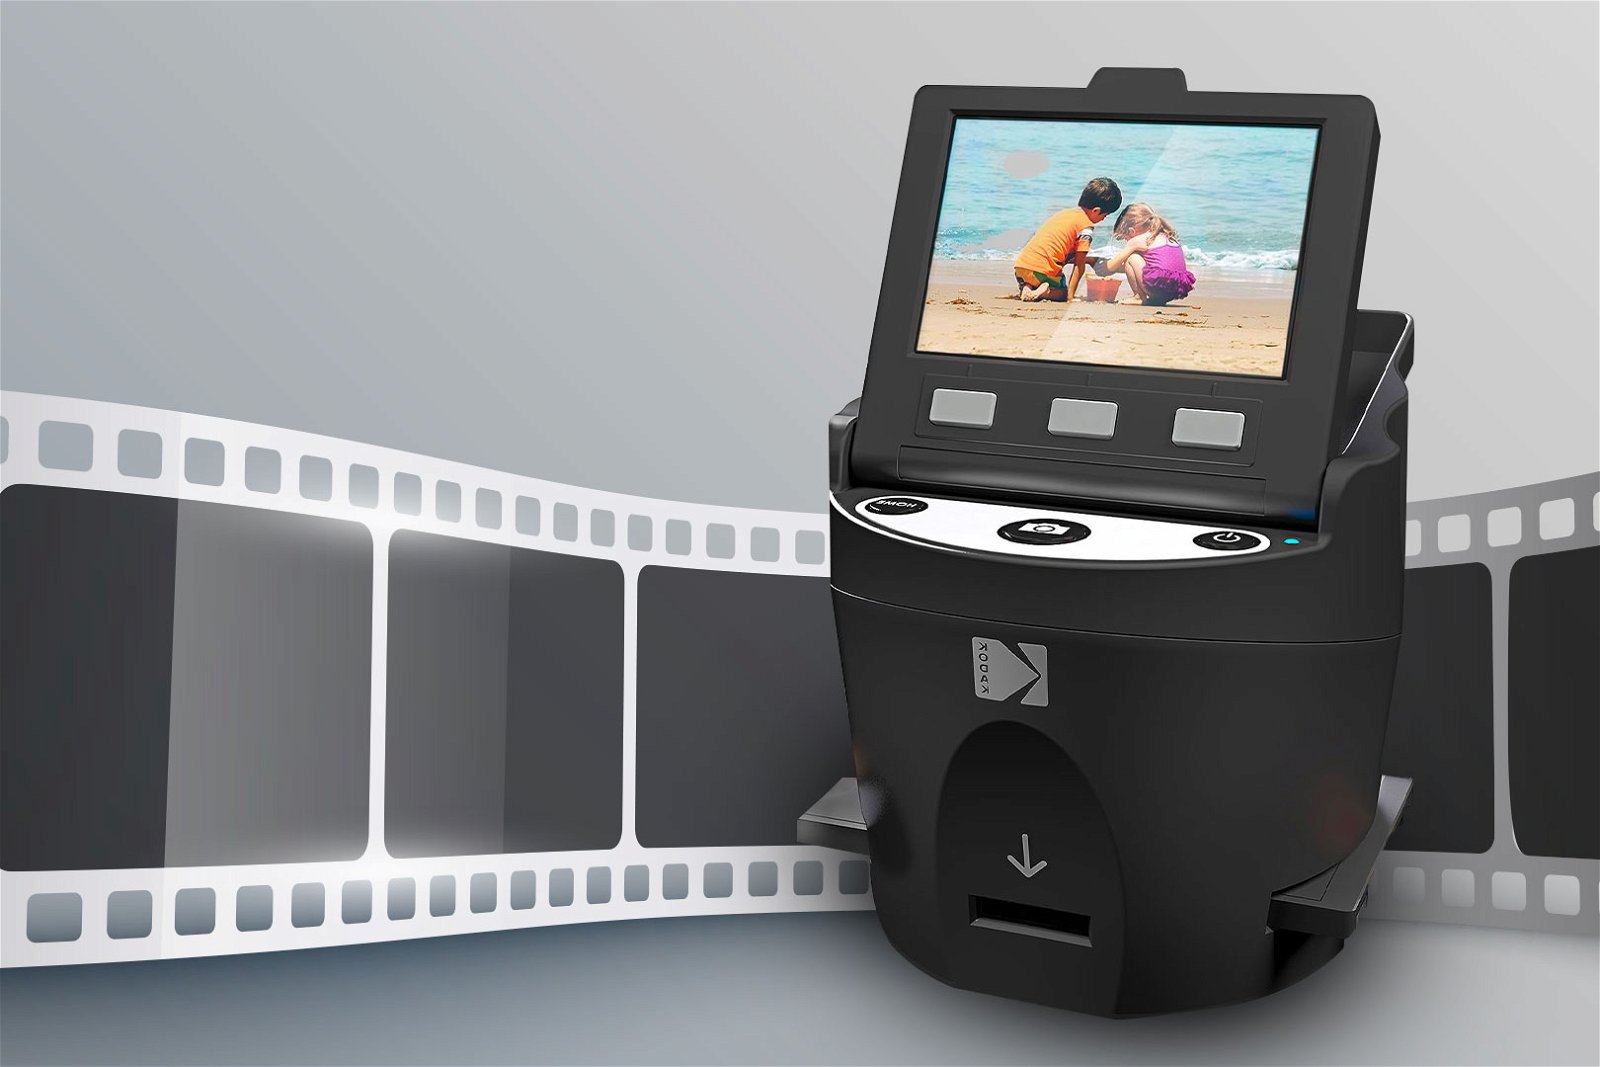 Film scanner in primo piano con pellicola da sviluppare dietro